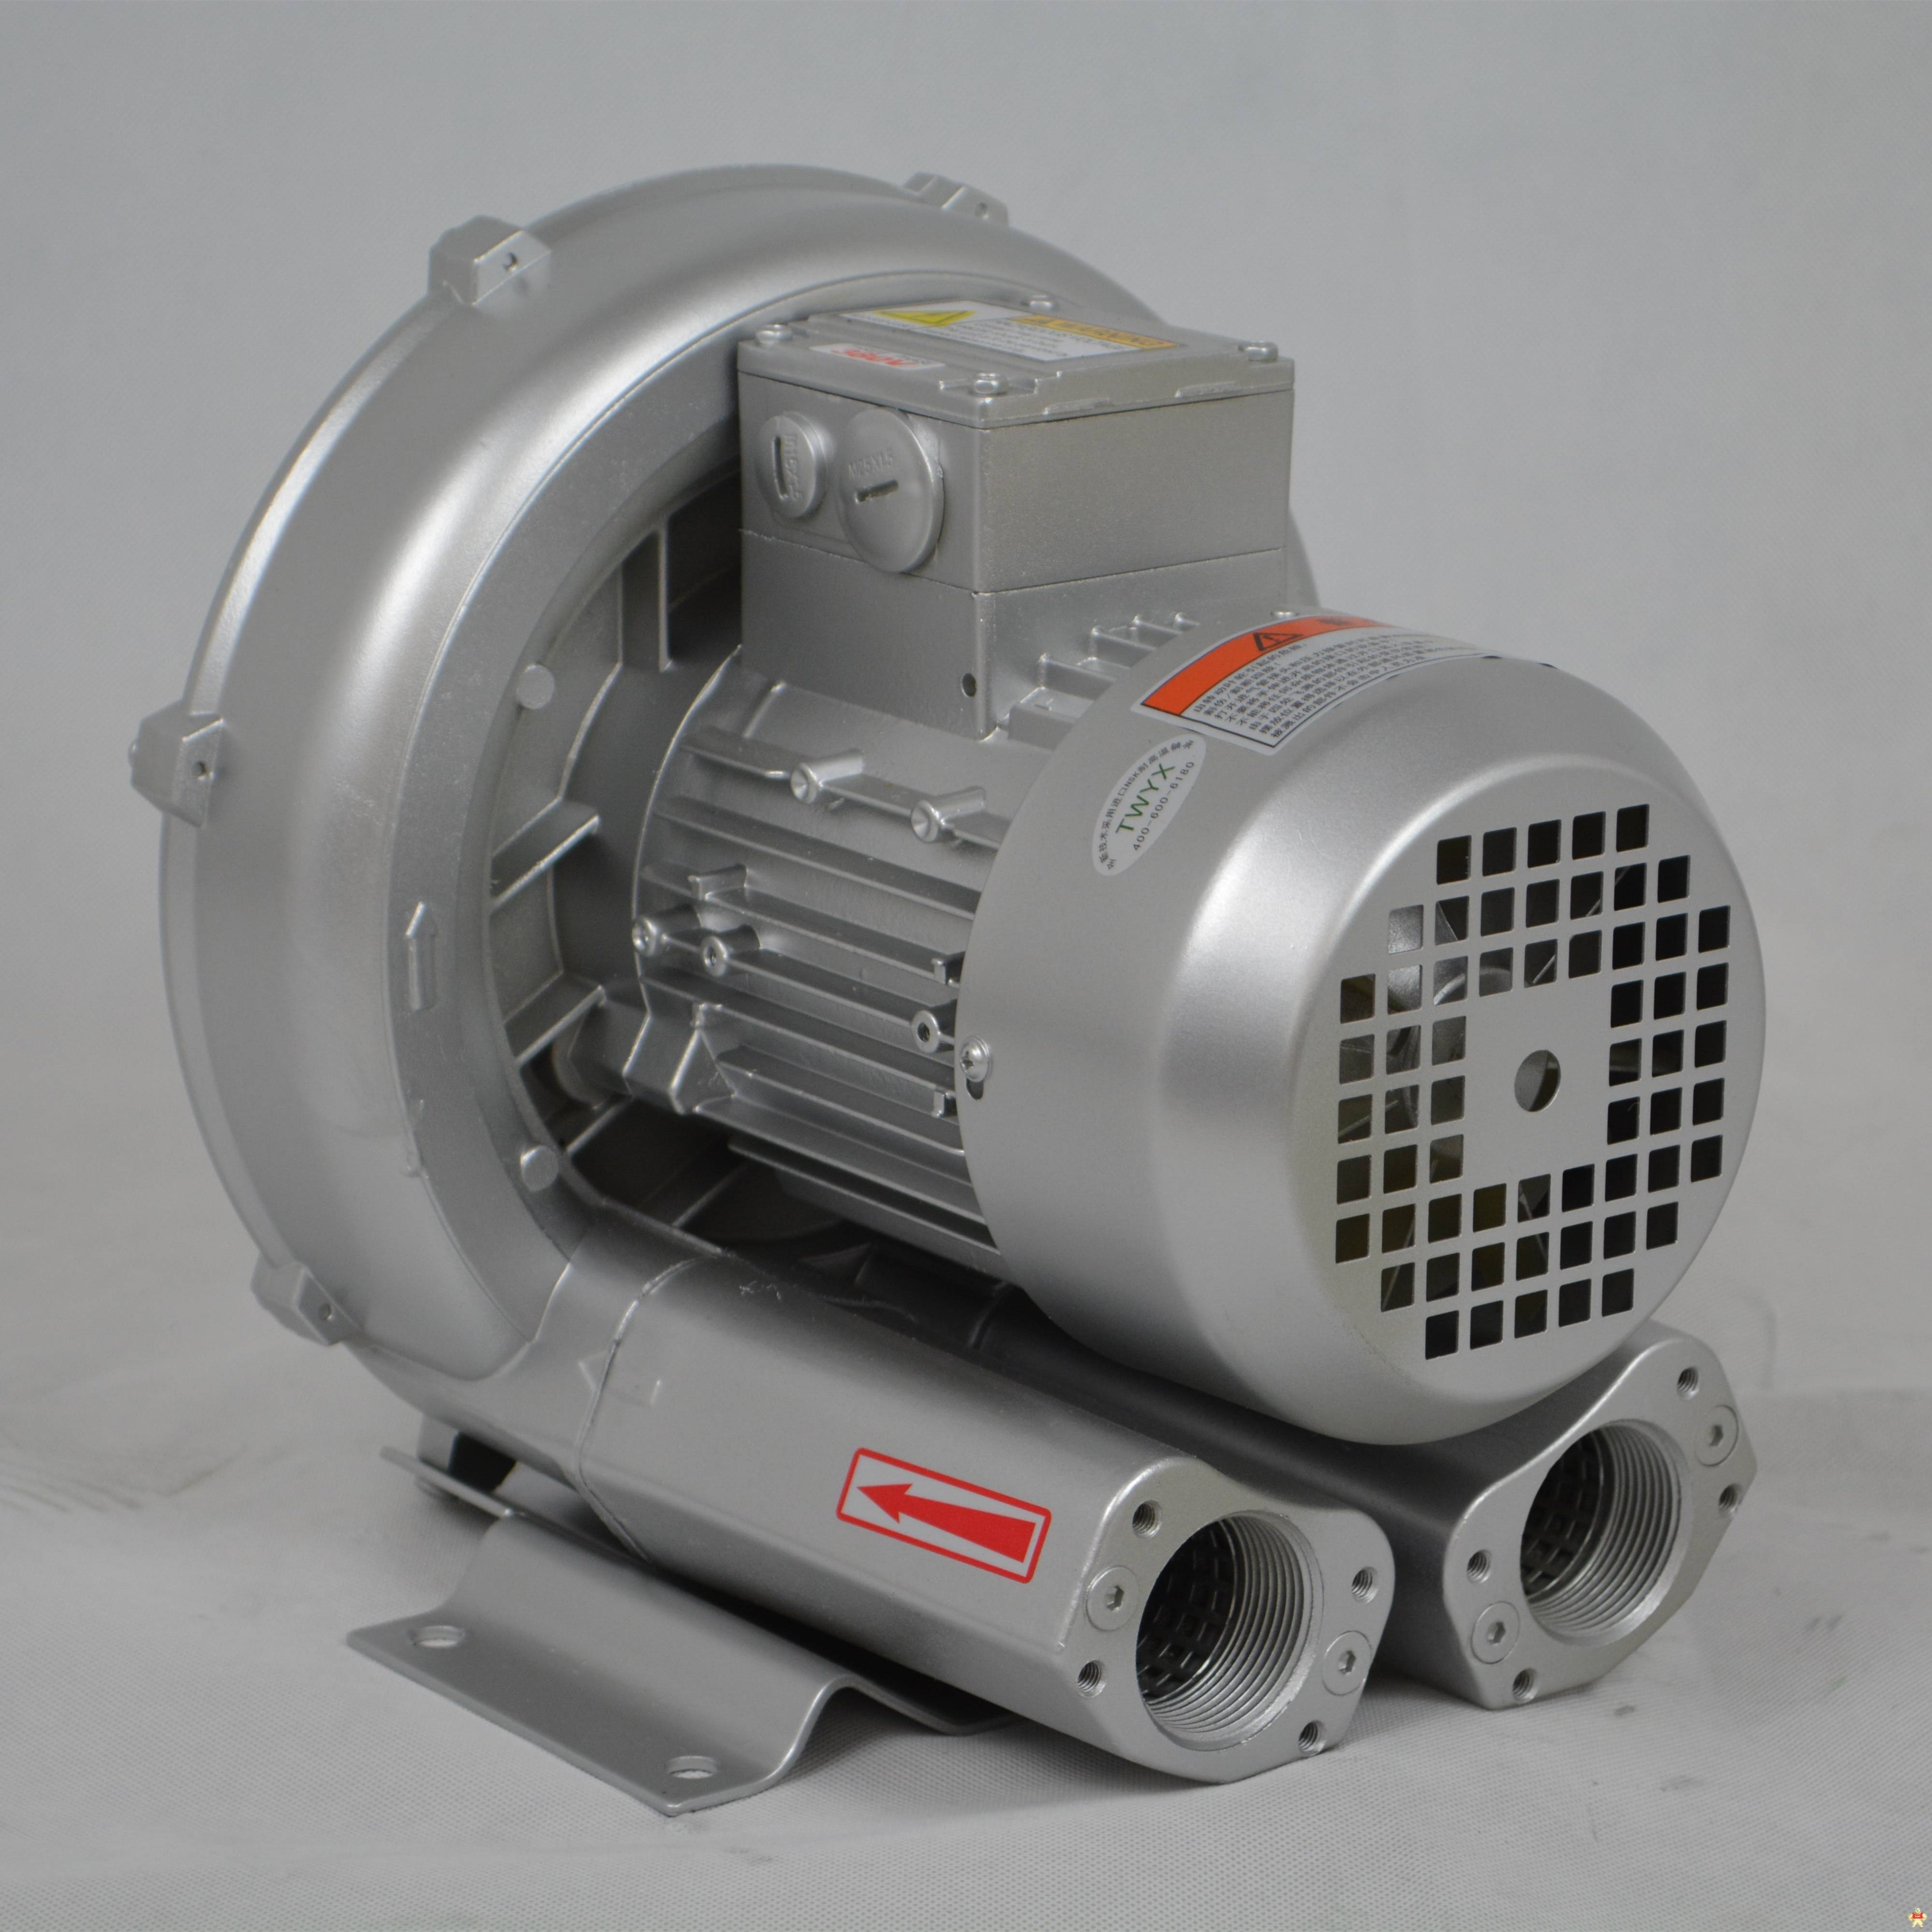 高压气泵 高压旋涡气泵,高压风机,高压鼓风机,高压气泵